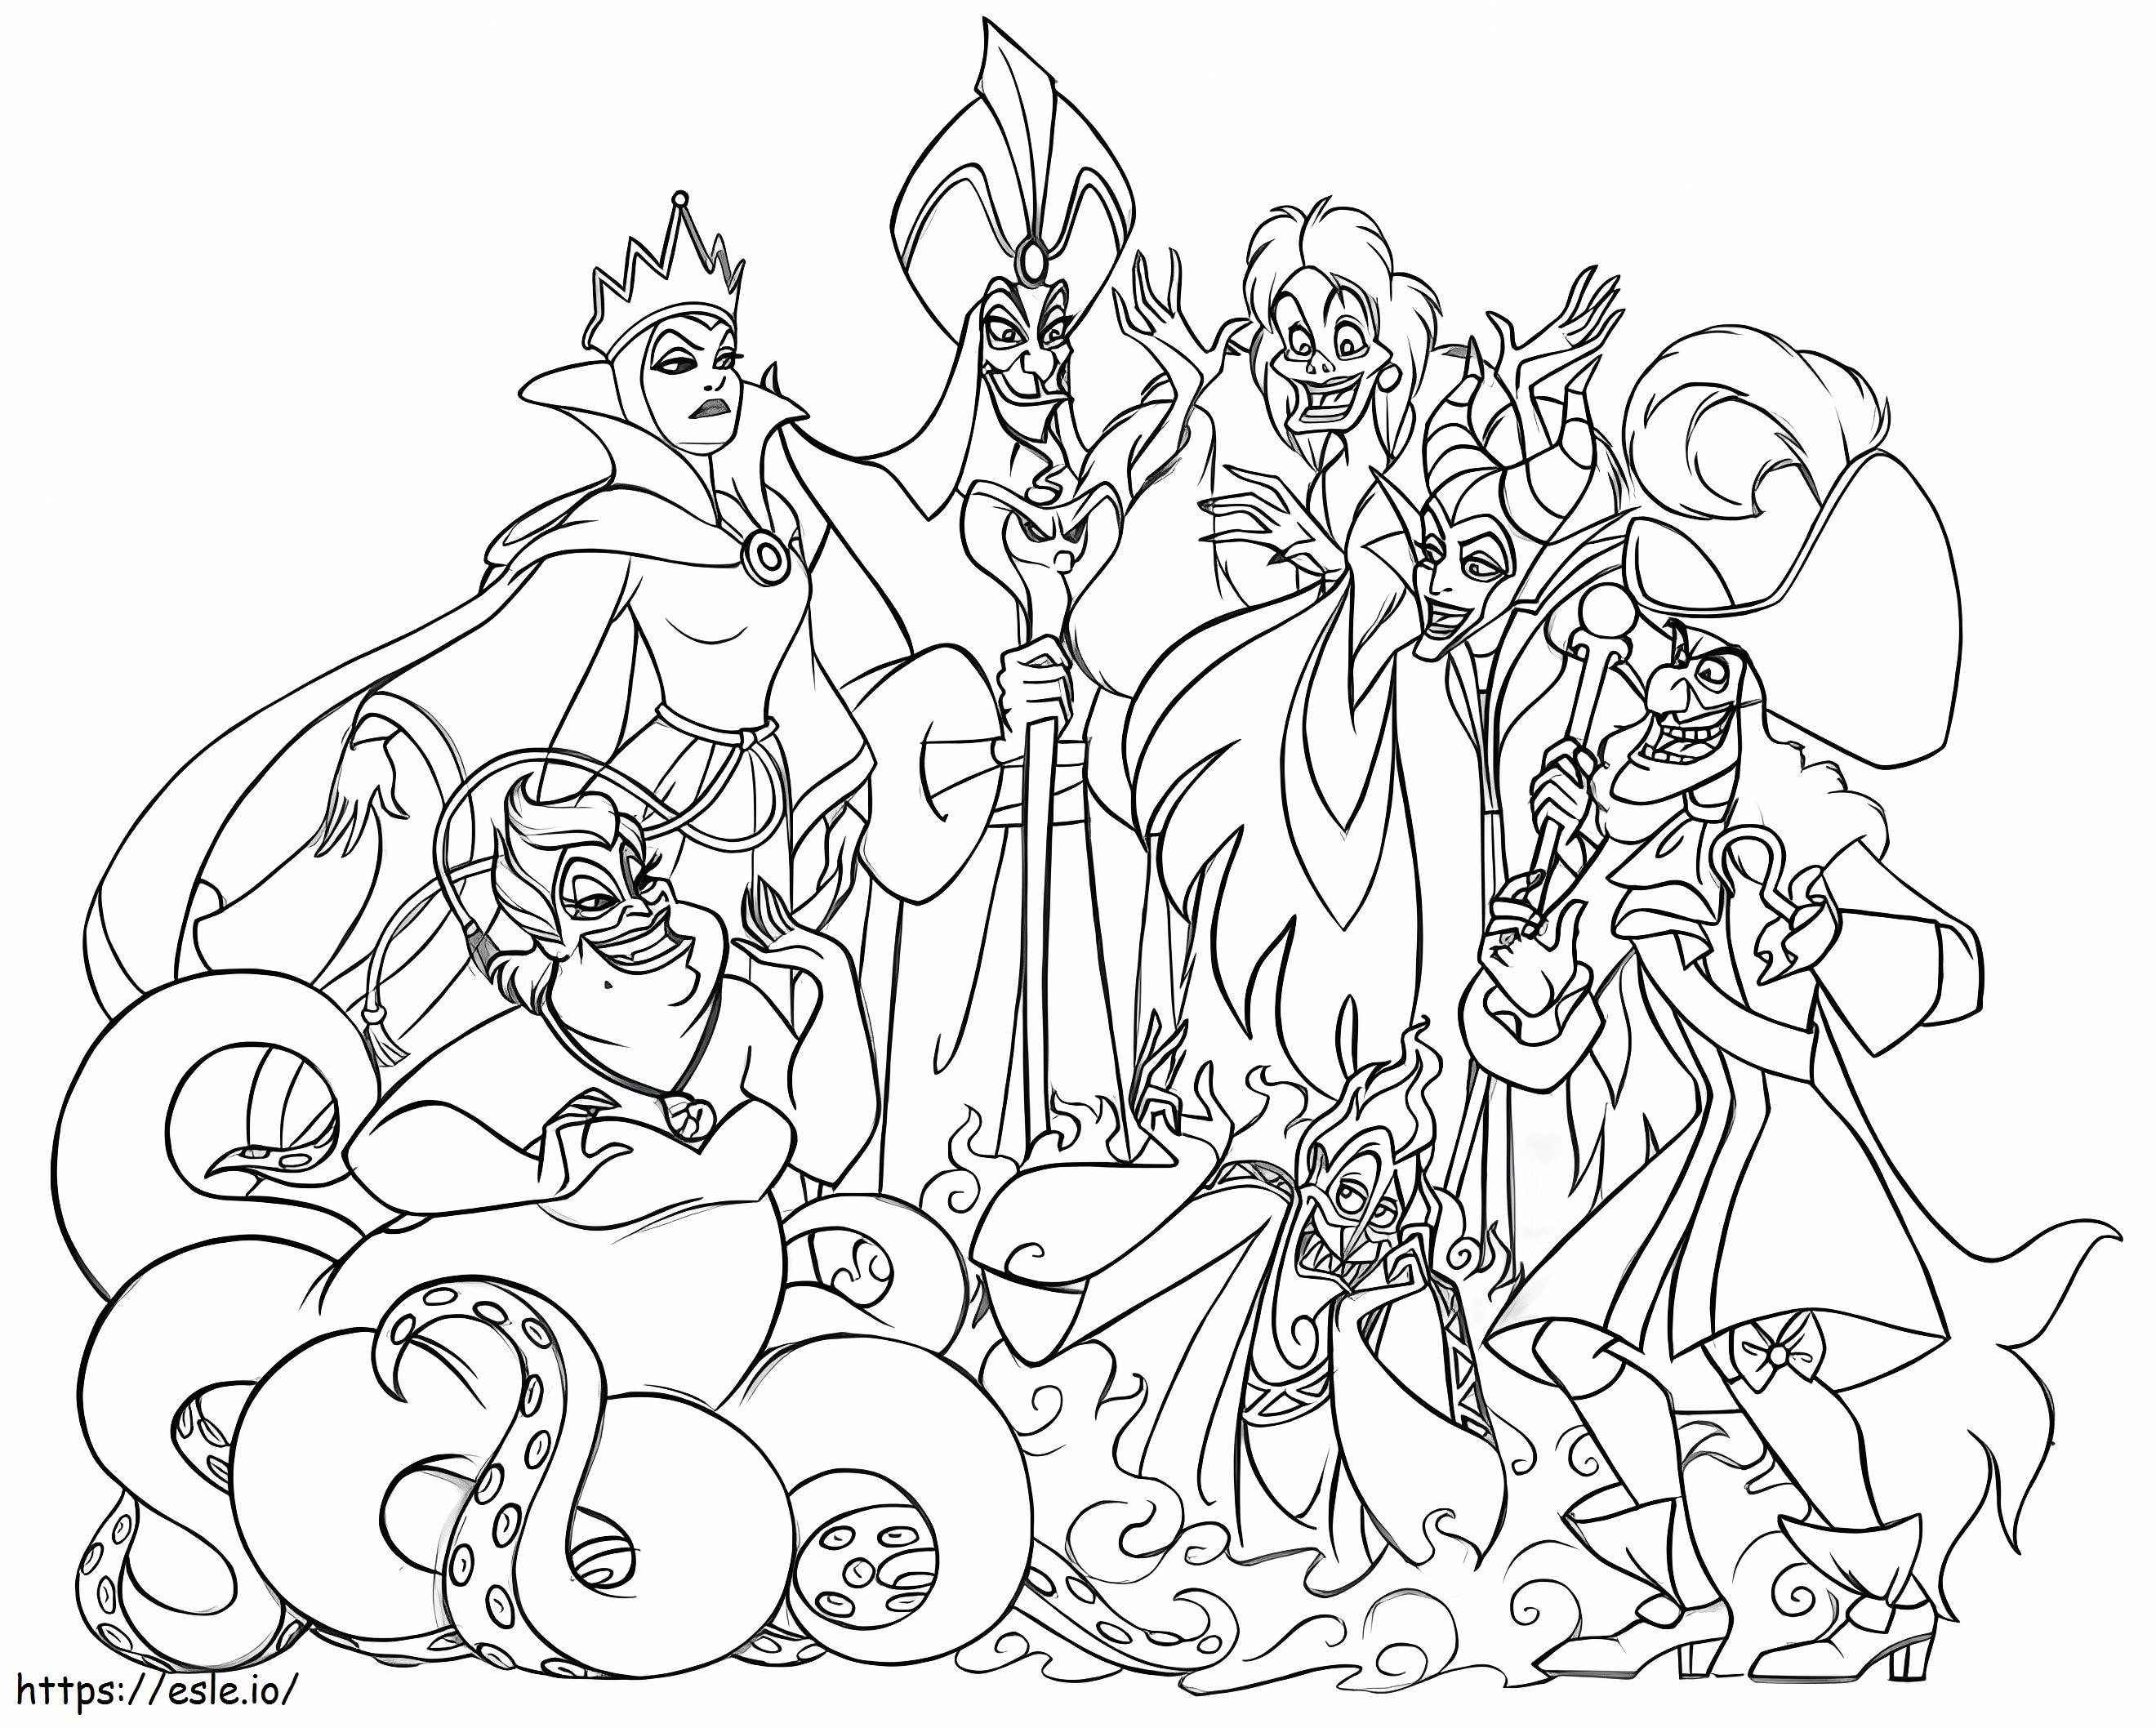 Disney Villains coloring page